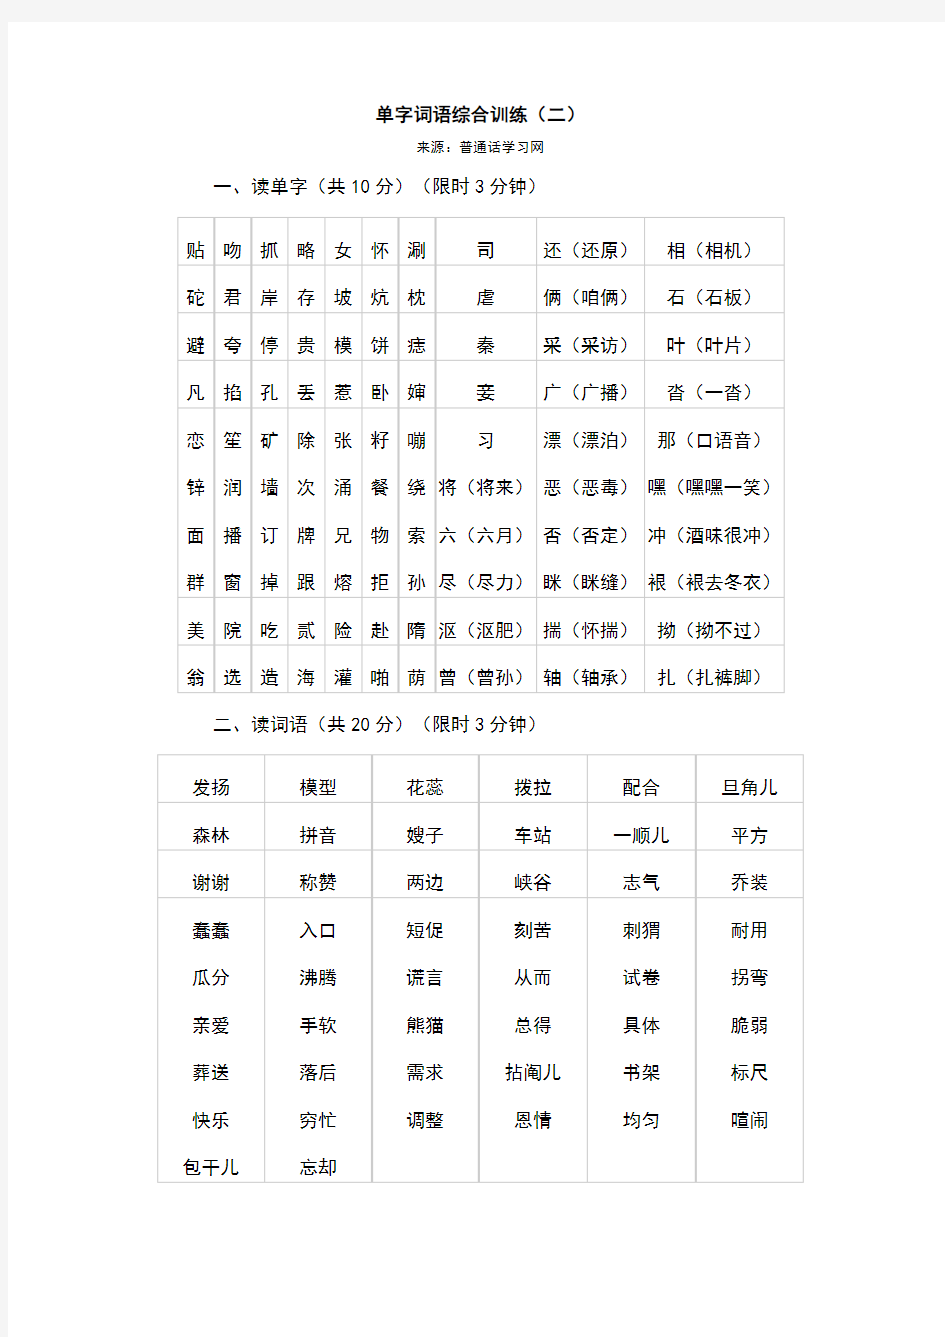 普通话水平测试用练习材料——普通话字词资料